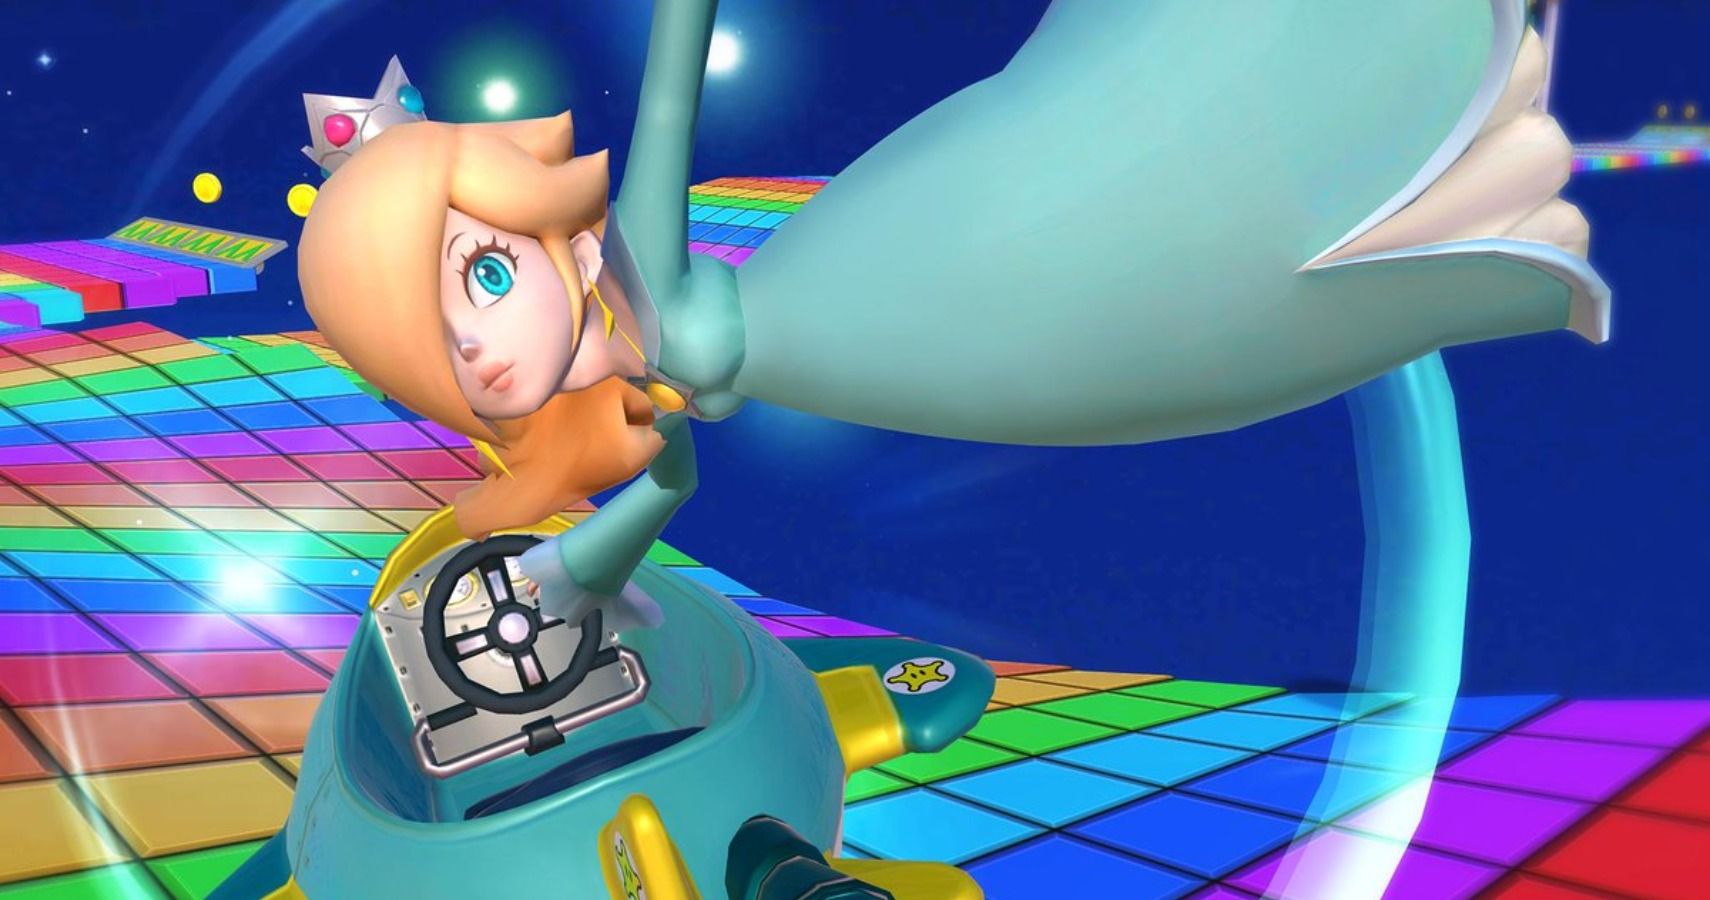 How To Get Rosalina In Mario Kart Wii.